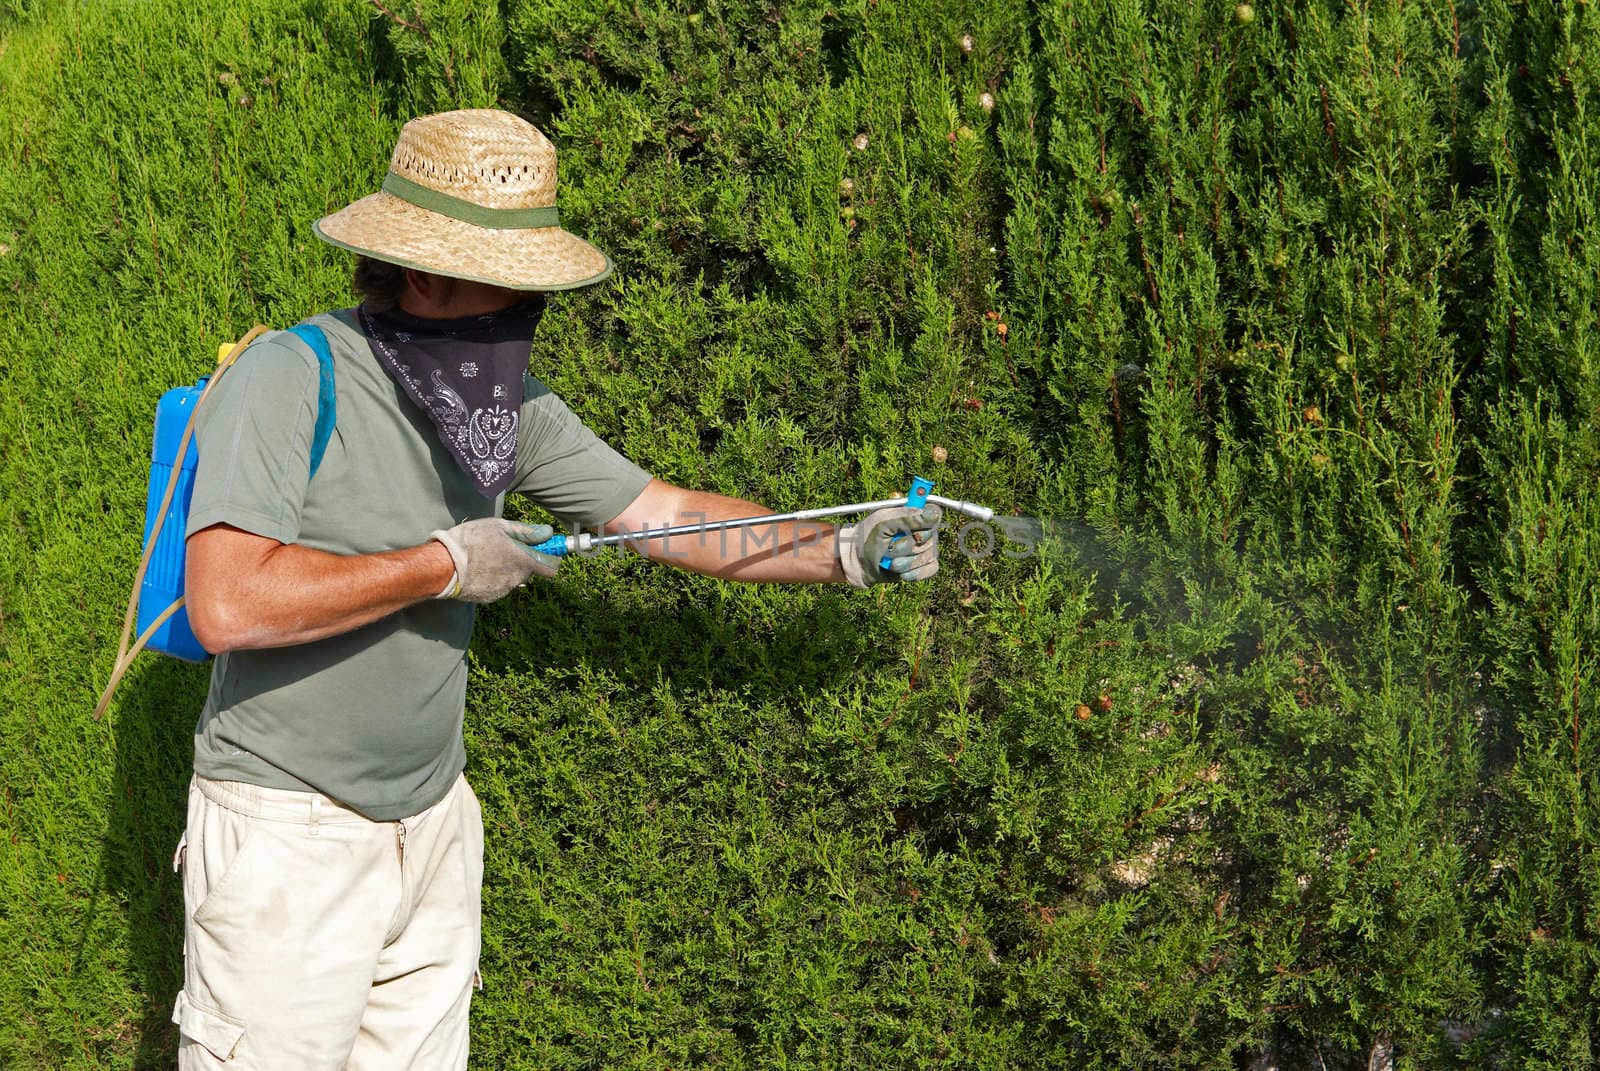 Gardener spraying pesticide by hemeroskopion